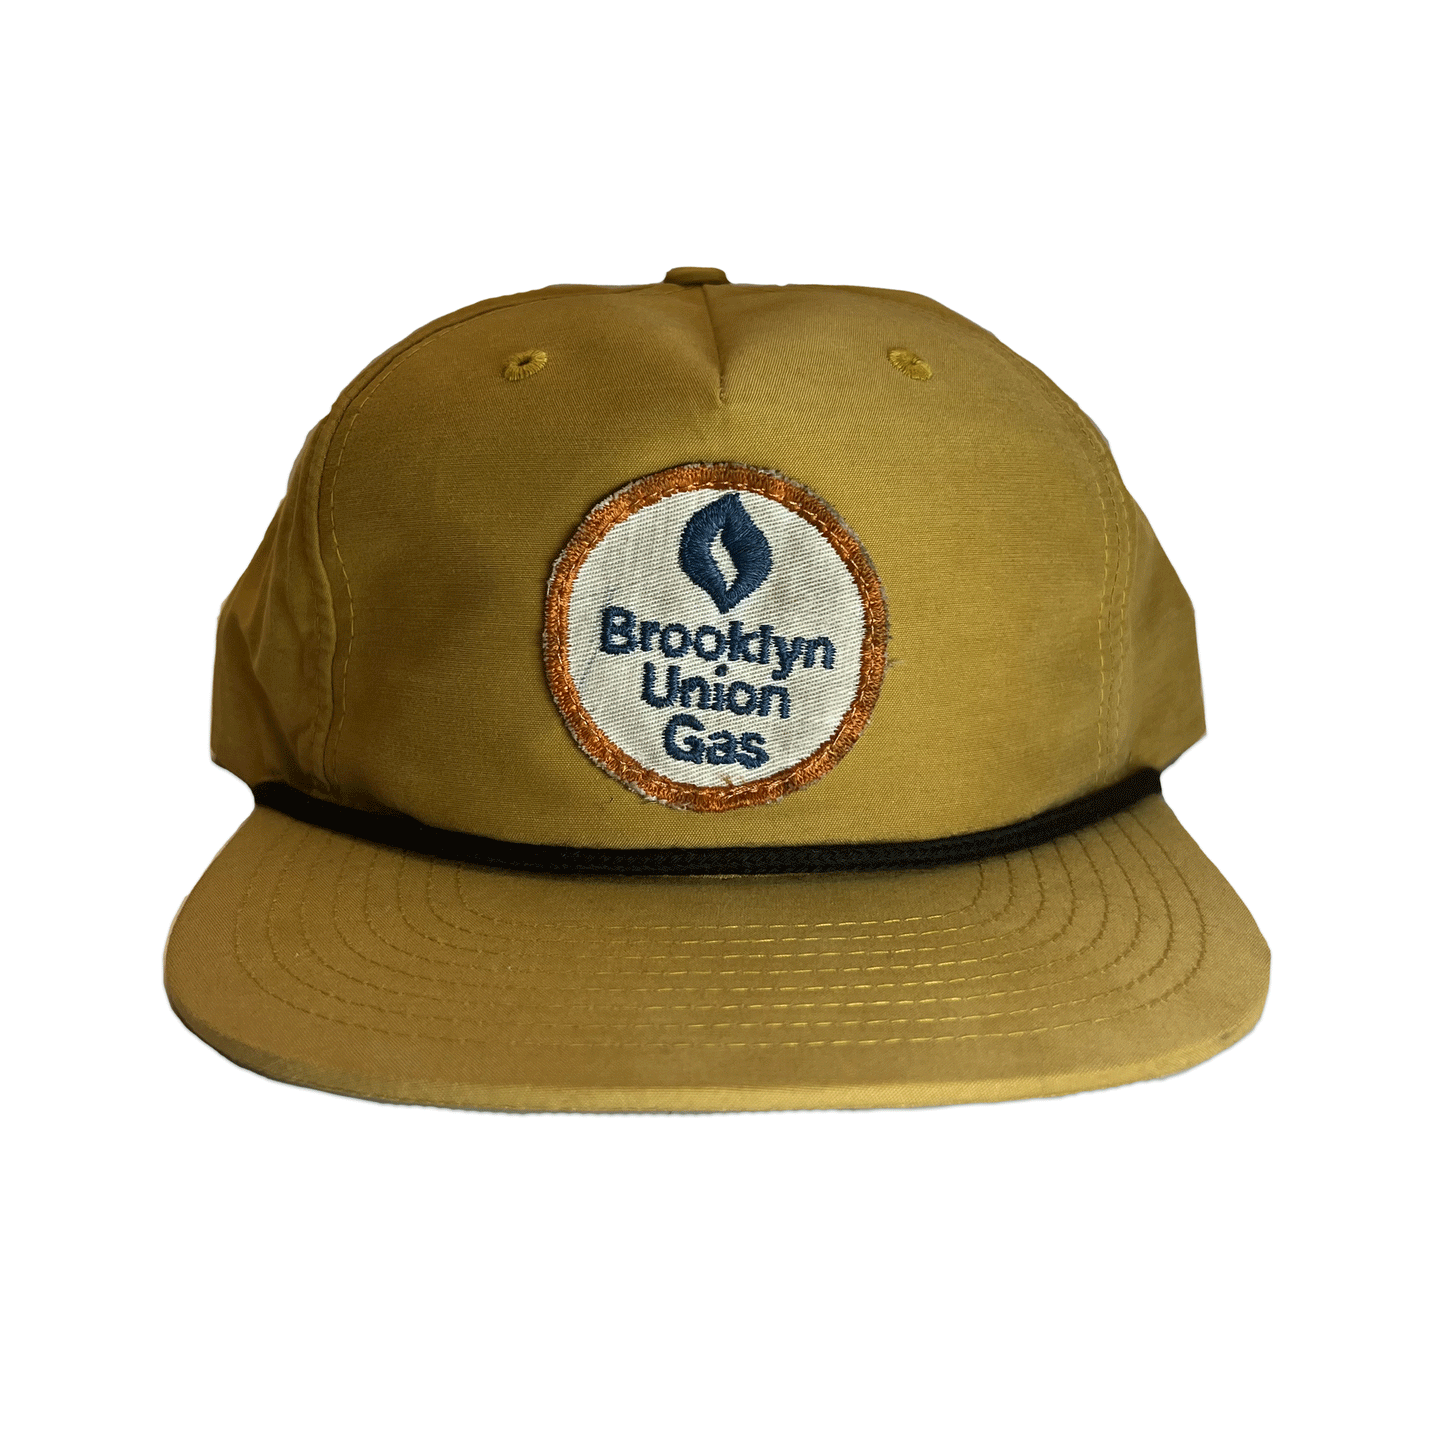 Brooklyn Union Gas. Hat. Mustard.